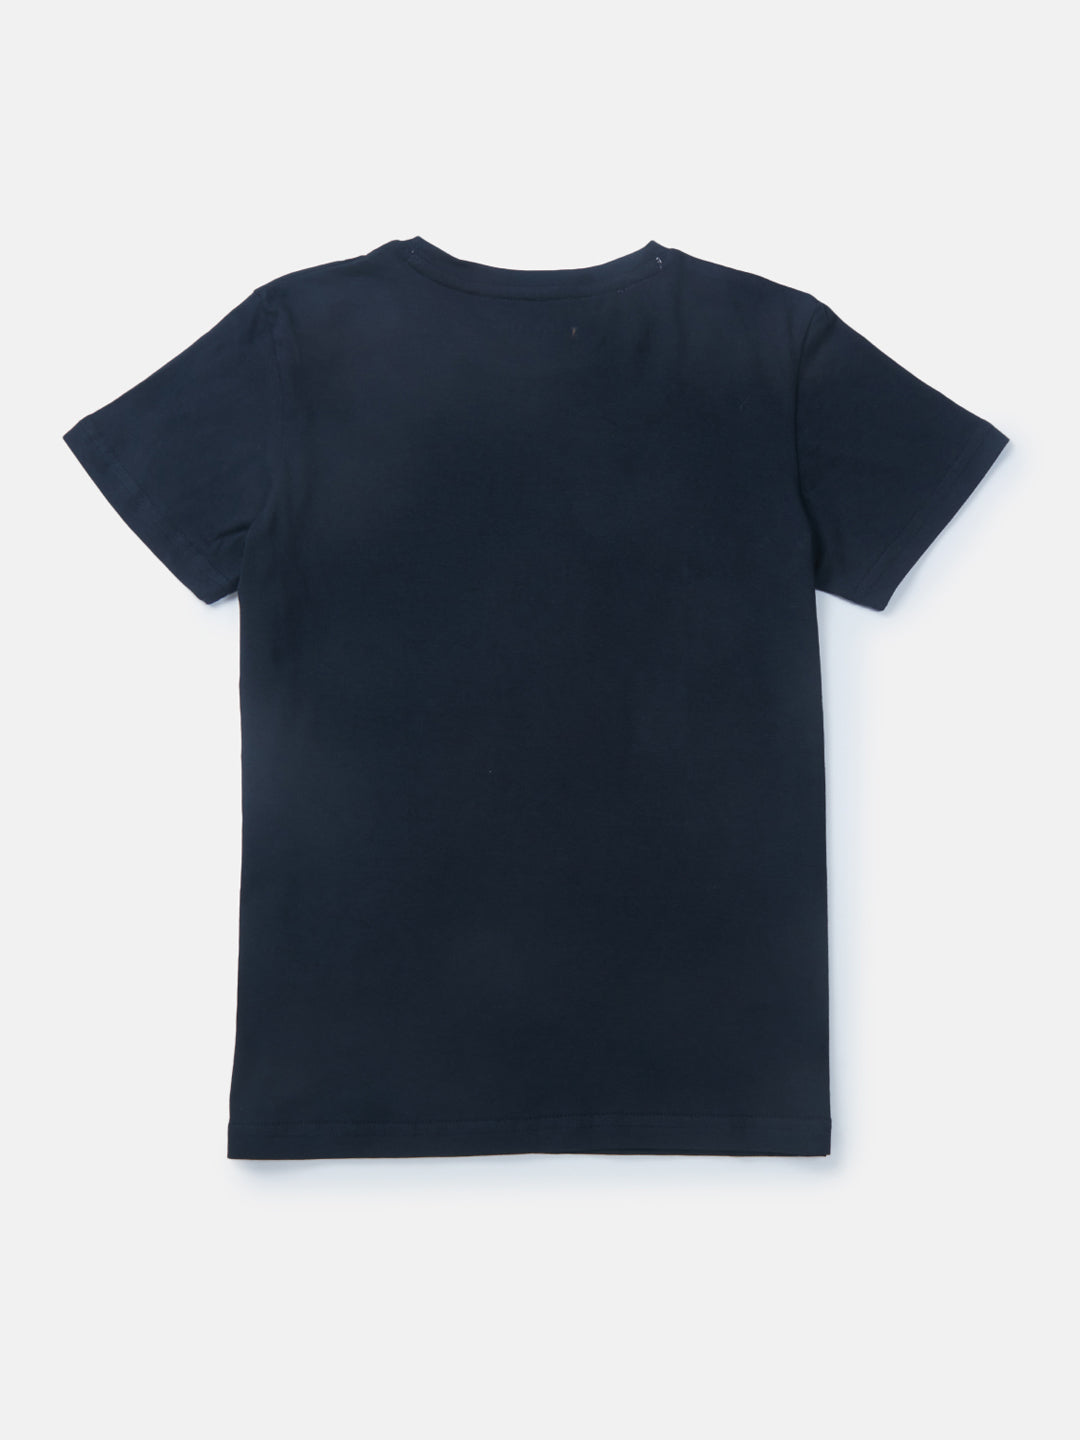 Boys Navy Blue Printed Knits T-Shirt